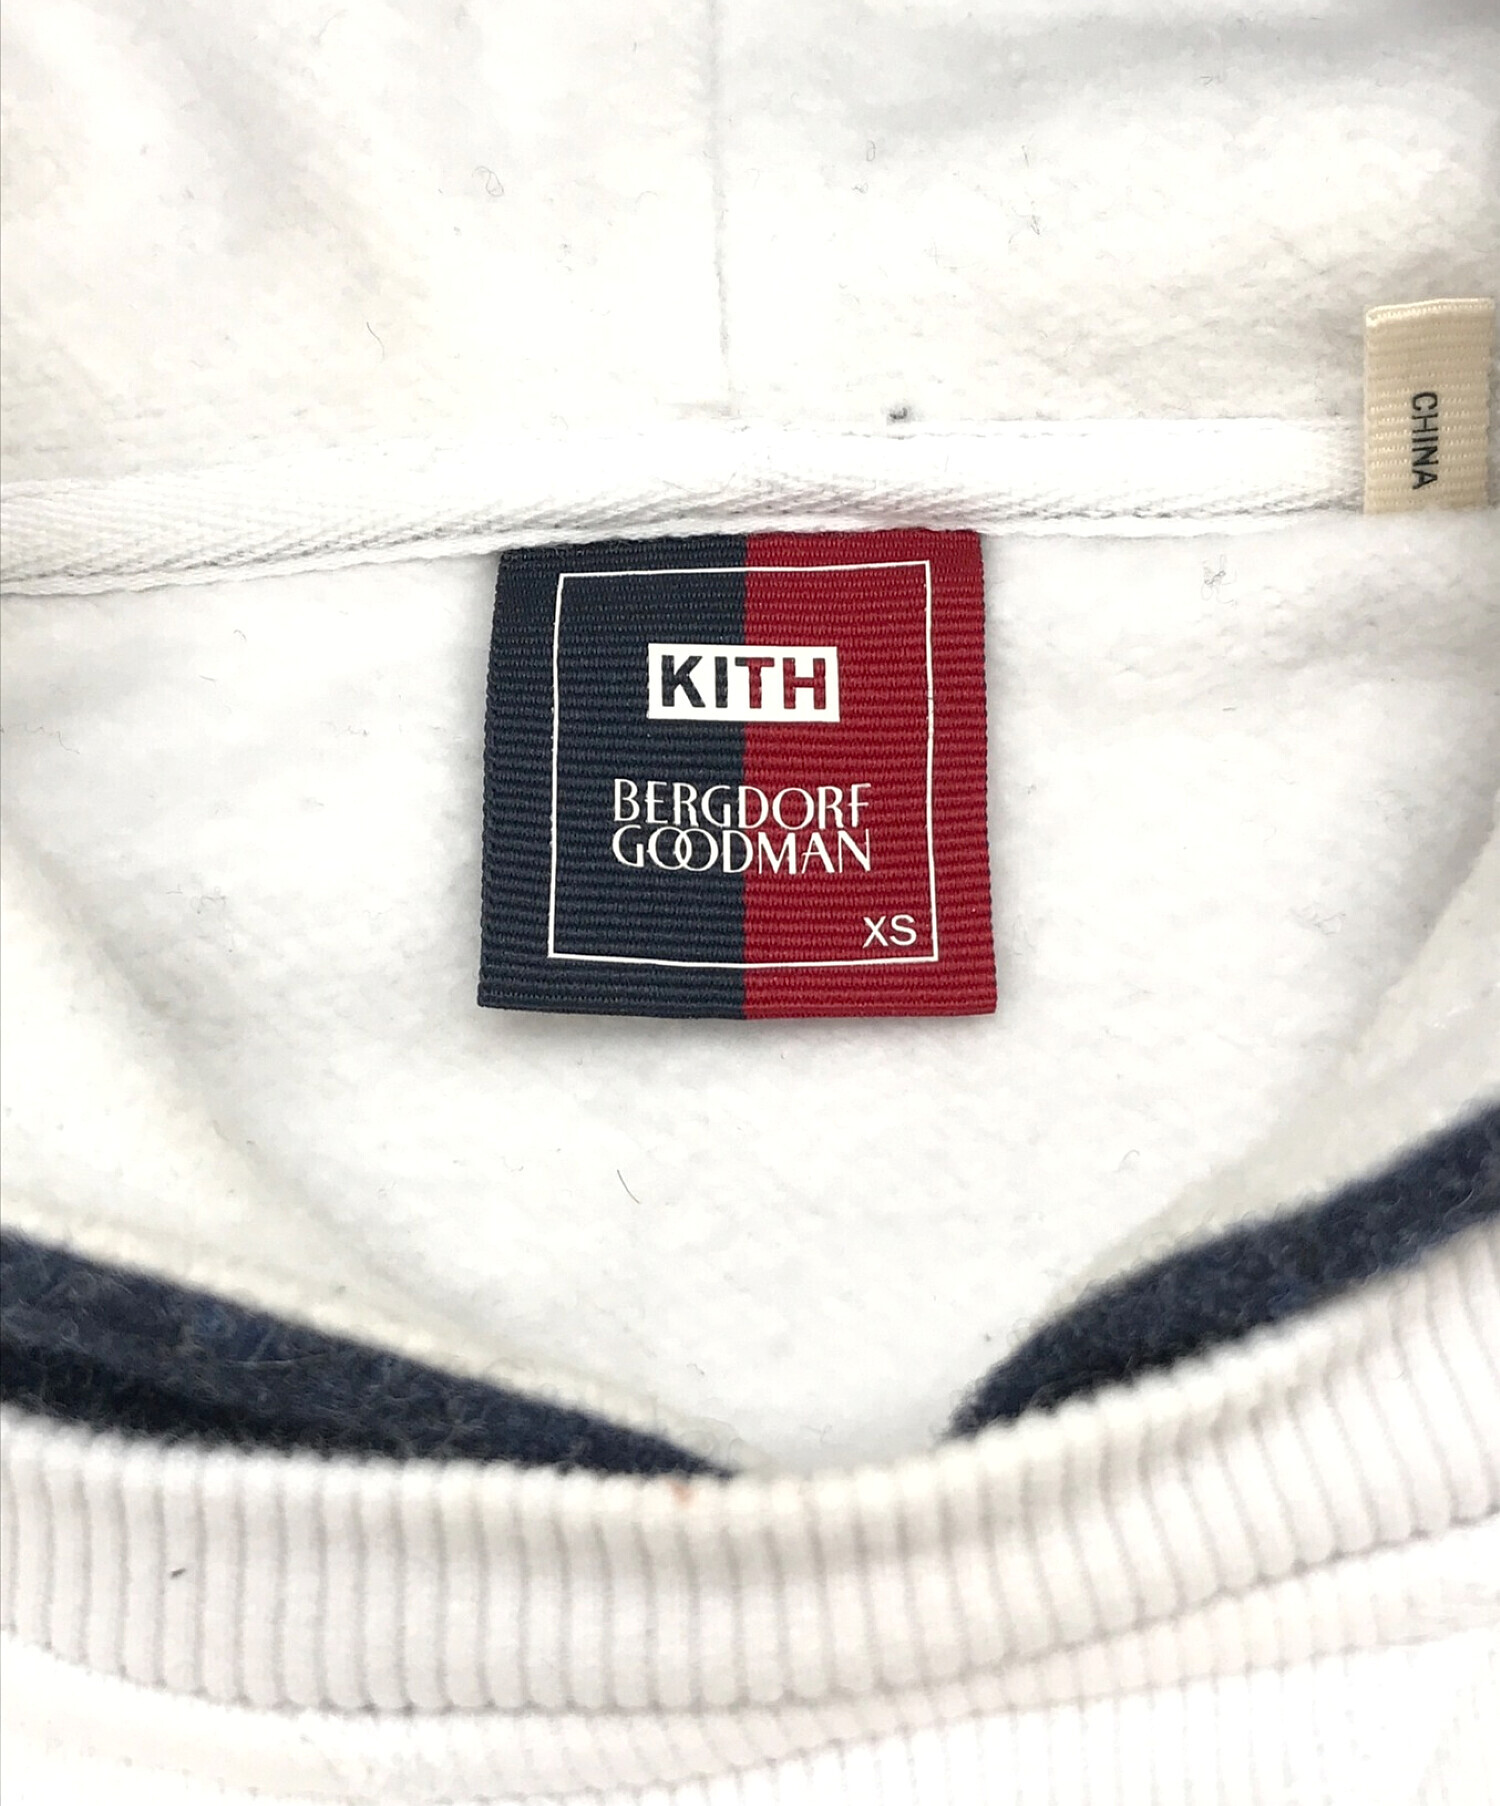 KITH (キス) Bergdorf Goodman (バーグドルフ グッドマン) パーカー ホワイト サイズ:XS